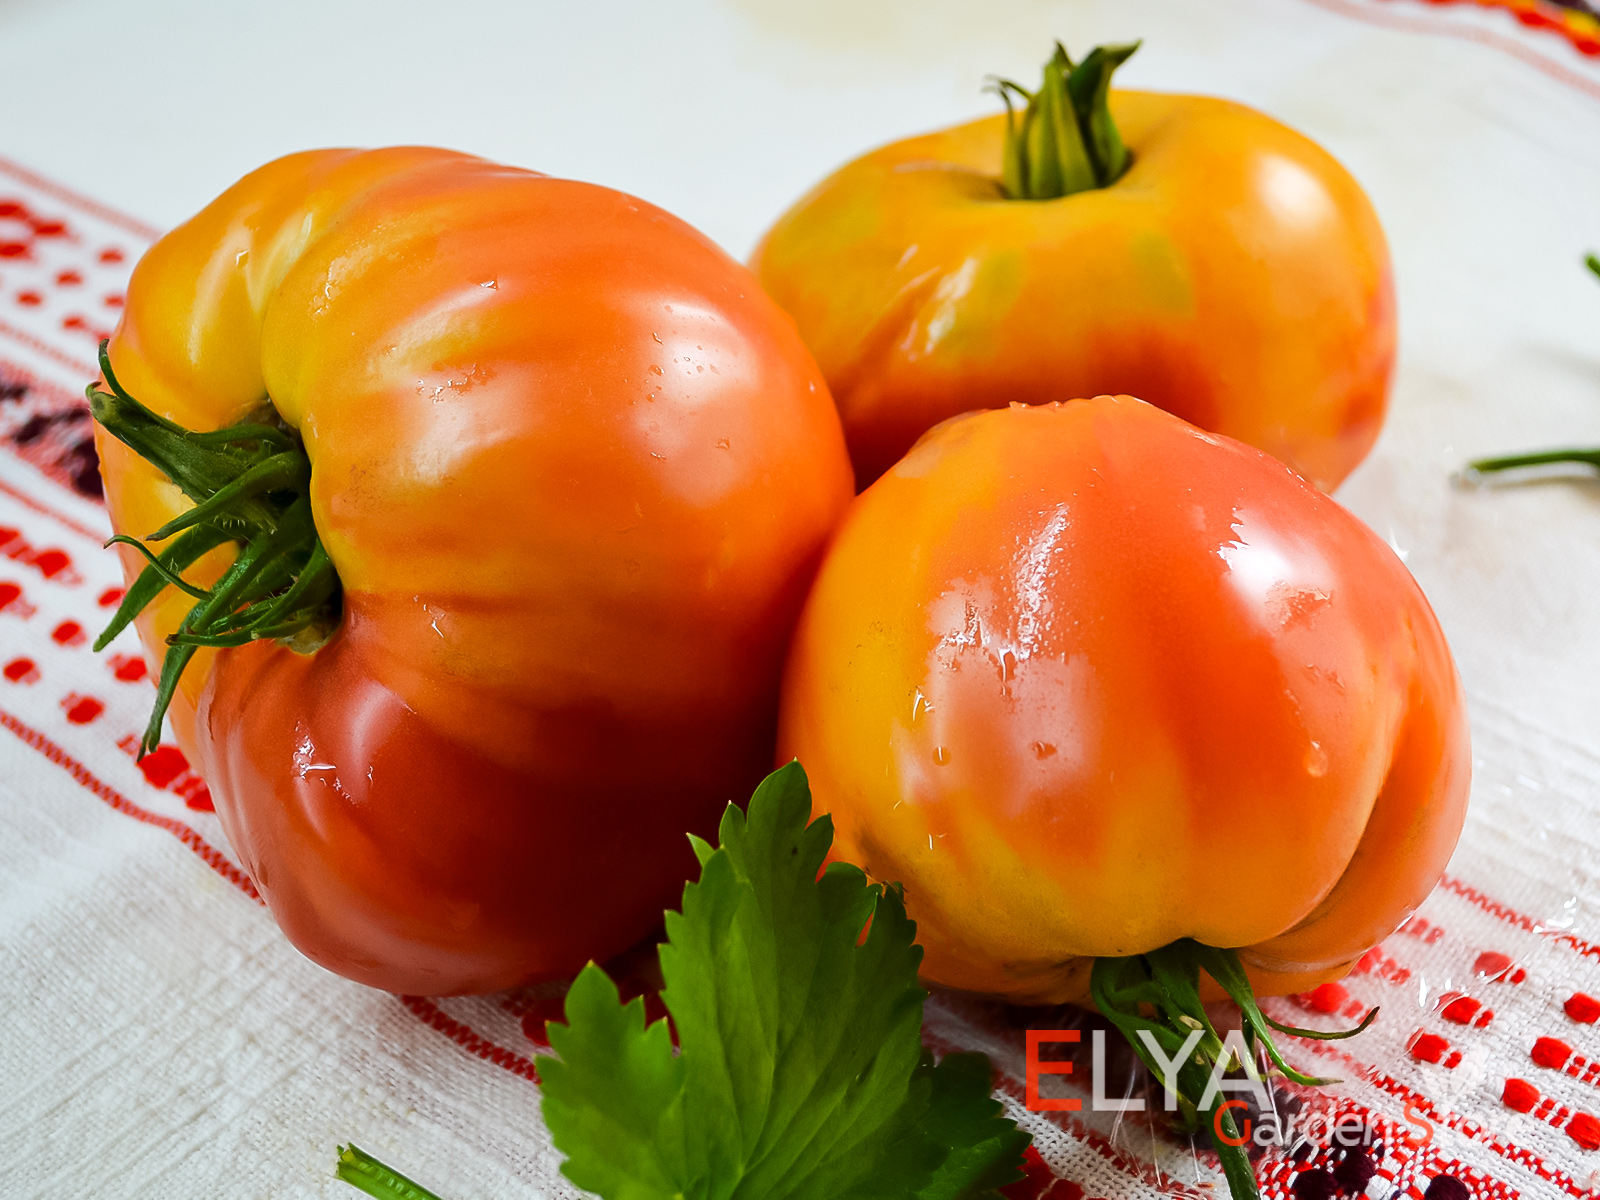 Коллекционный сорт томата Чупа Чупс Биколор - насыщенно сладкий, урожайный в магазине Elya Garden